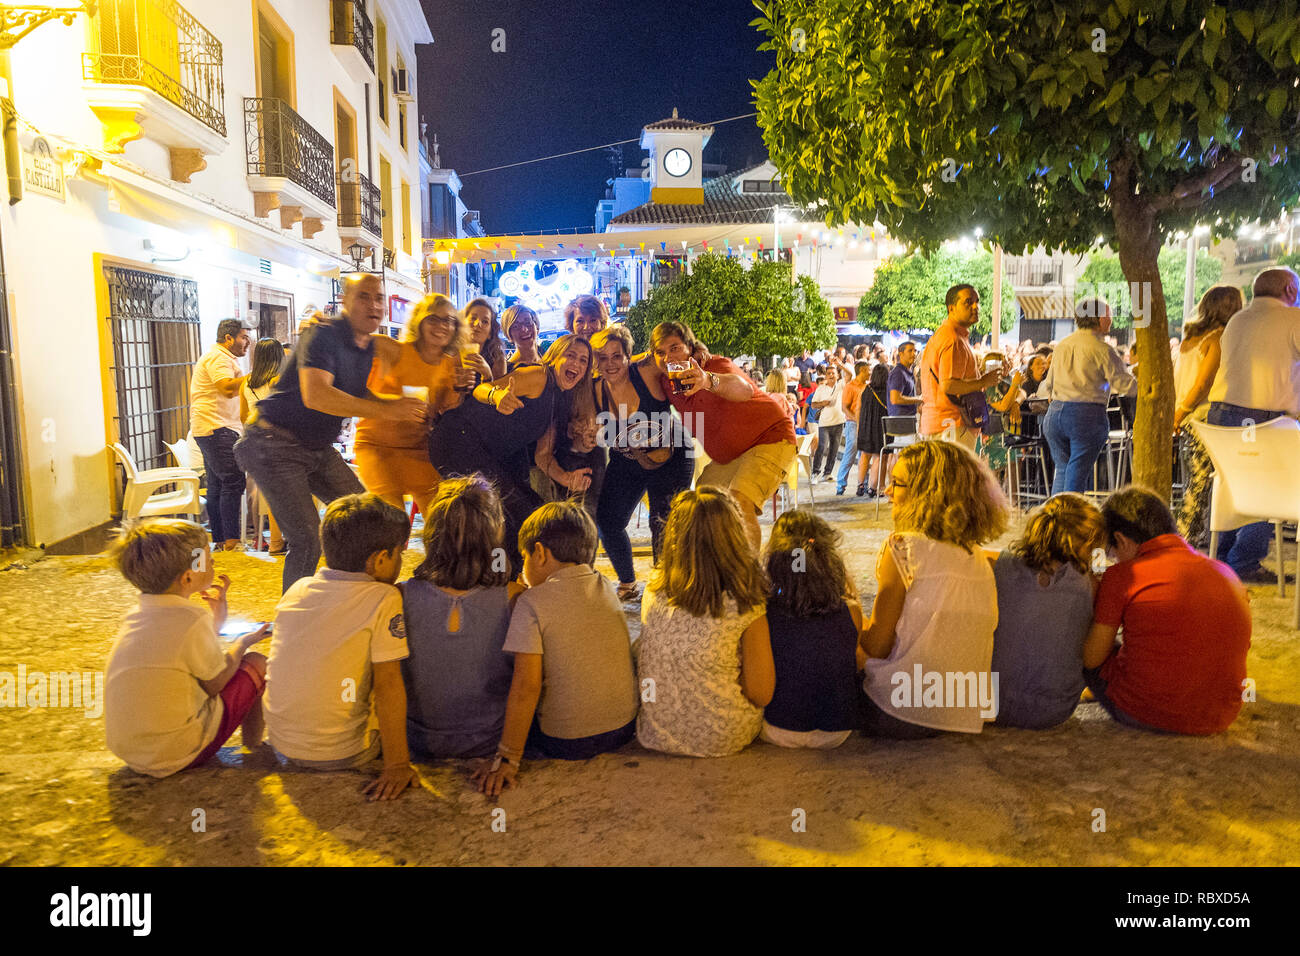 Eltern feiern bei einer Fiesta, während alle ihre kleinen Kinder um 2 Uhr morgens am Telefon sind. Plaza Espana, Carcabuey, Andalusien. Spanien Stockfoto